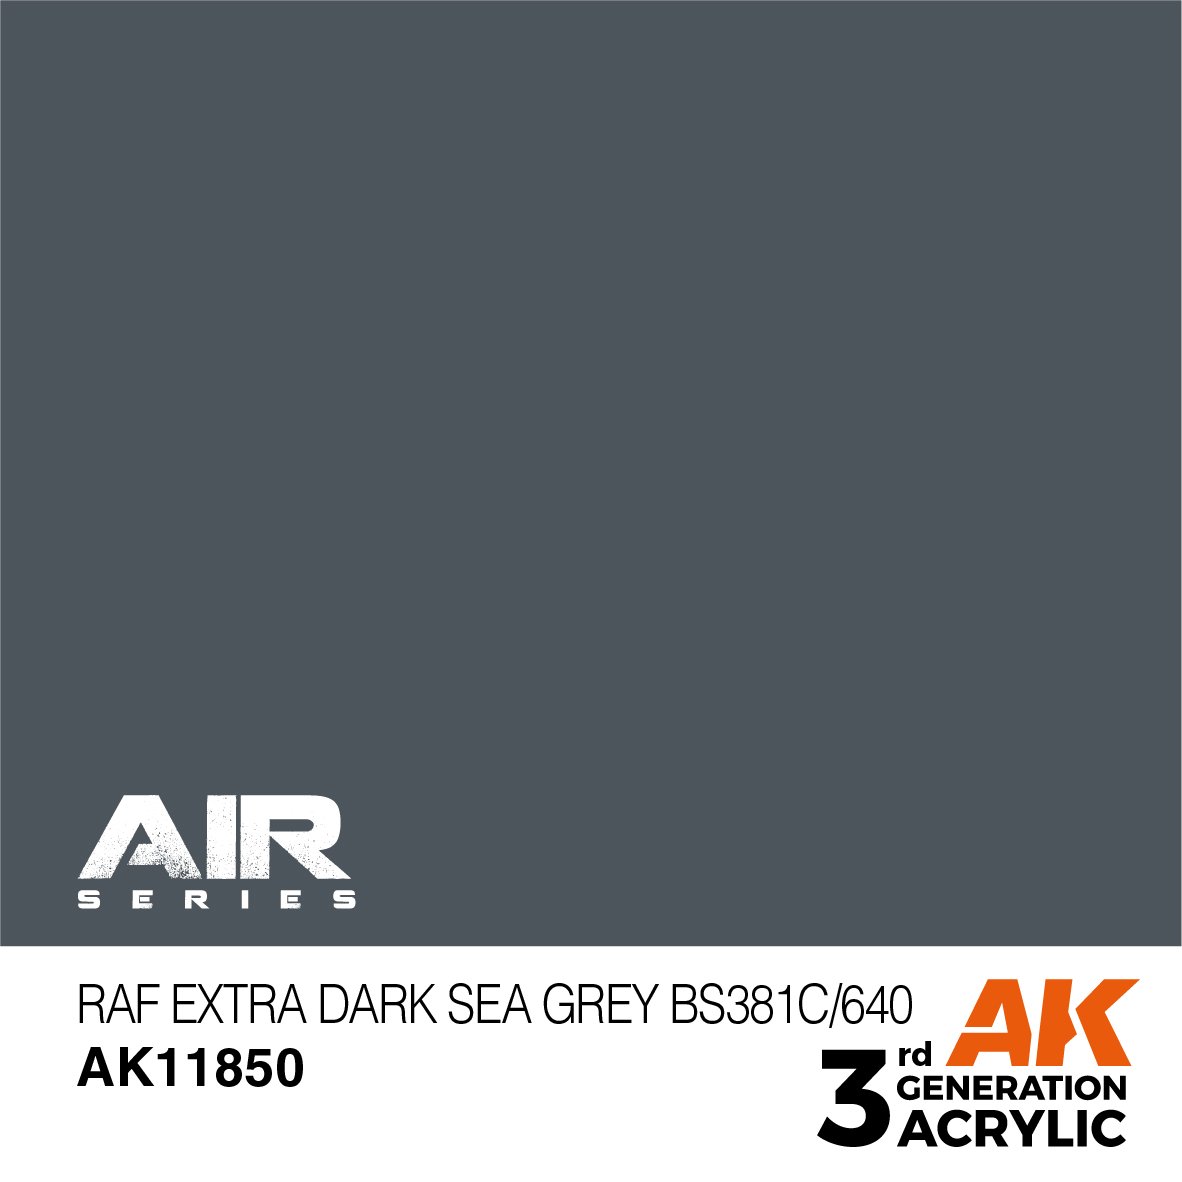 RAF Extra Dark Sea Grey BS381C/640 – AIR